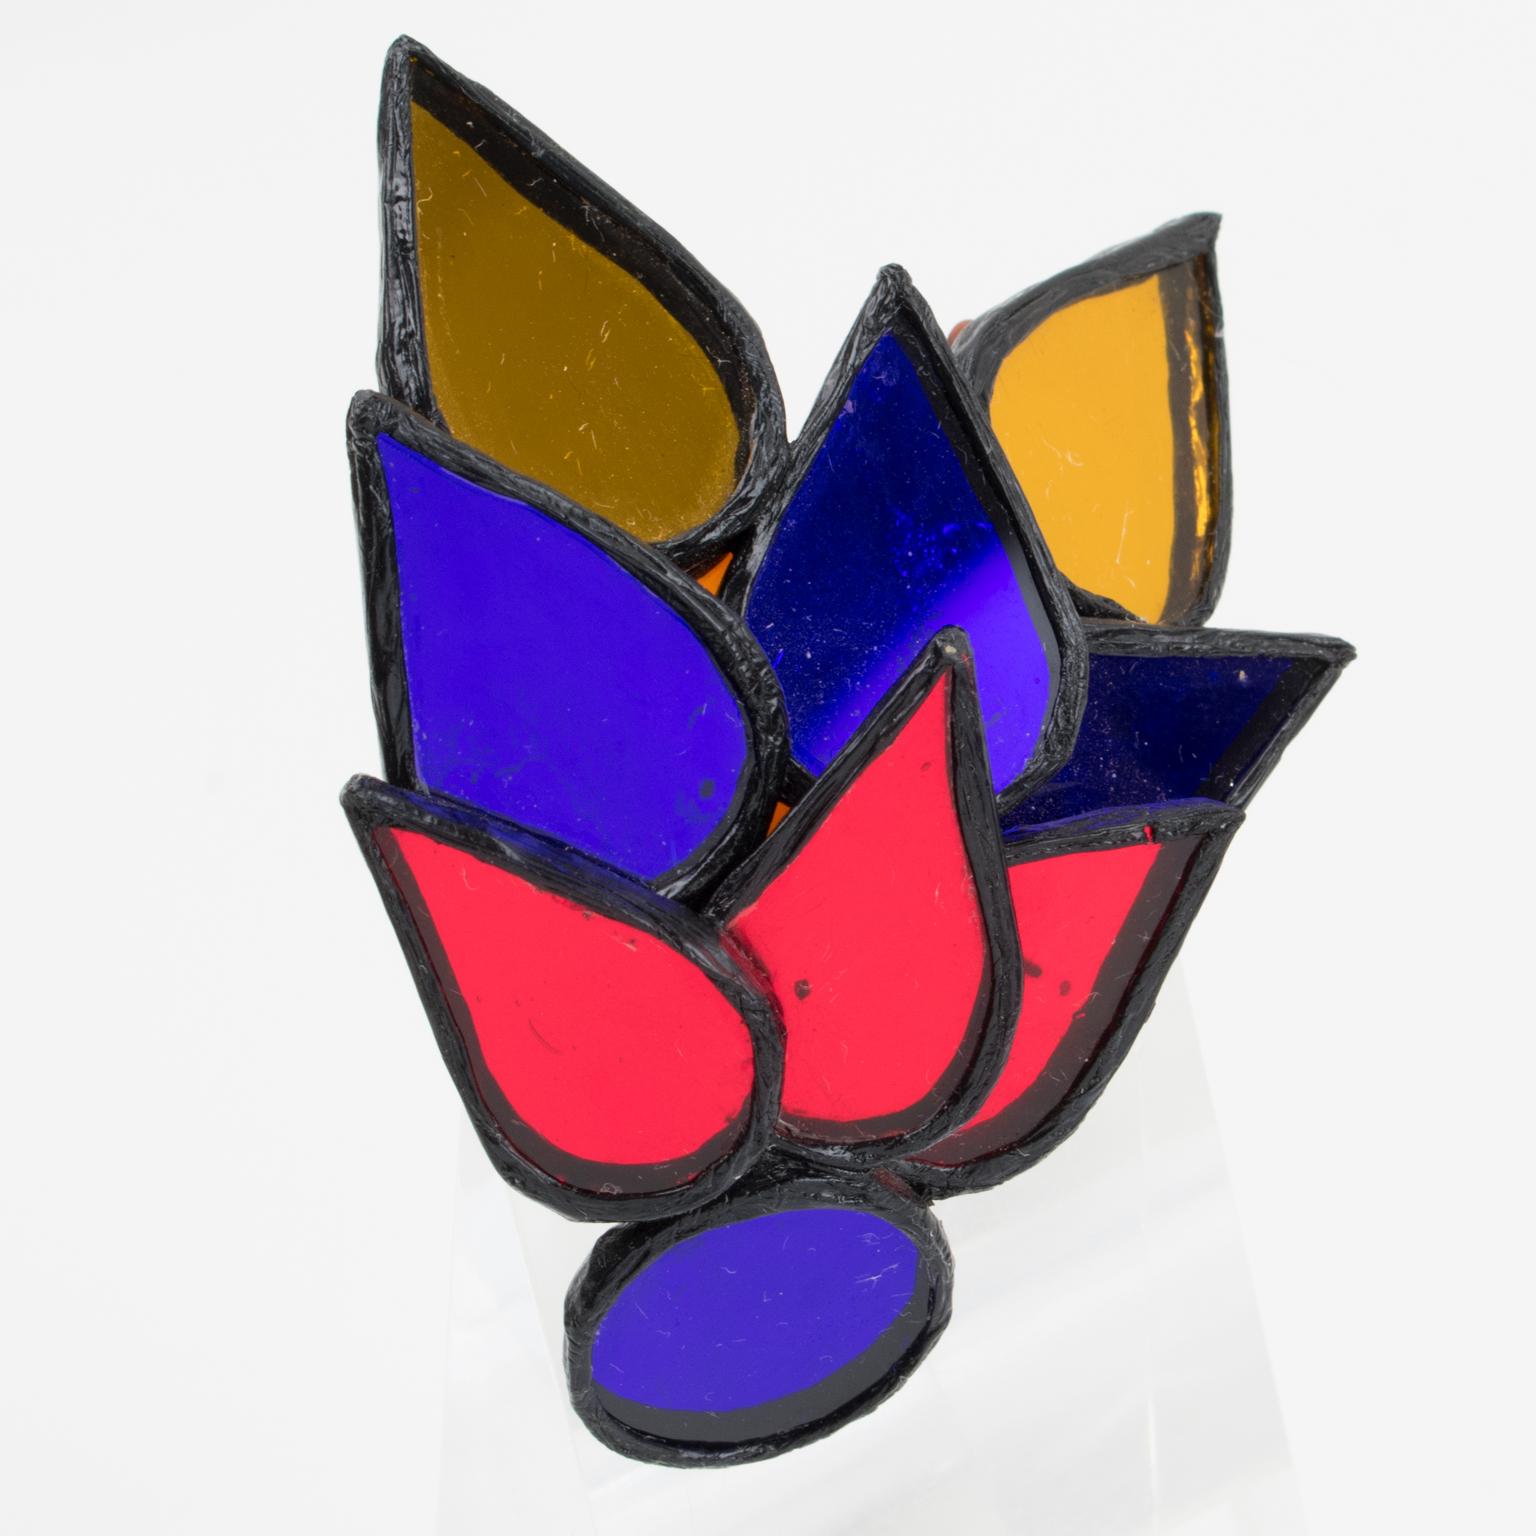 Il s'agit d'une merveilleuse broche en talosel ou en résine conçue par Irena Jaworska dans les années 1970. La pièce présente une forme géométrique d'oiseau dans un cadre en résine noire, surmonté de miroirs multicolores dans les tons rouge rubis,